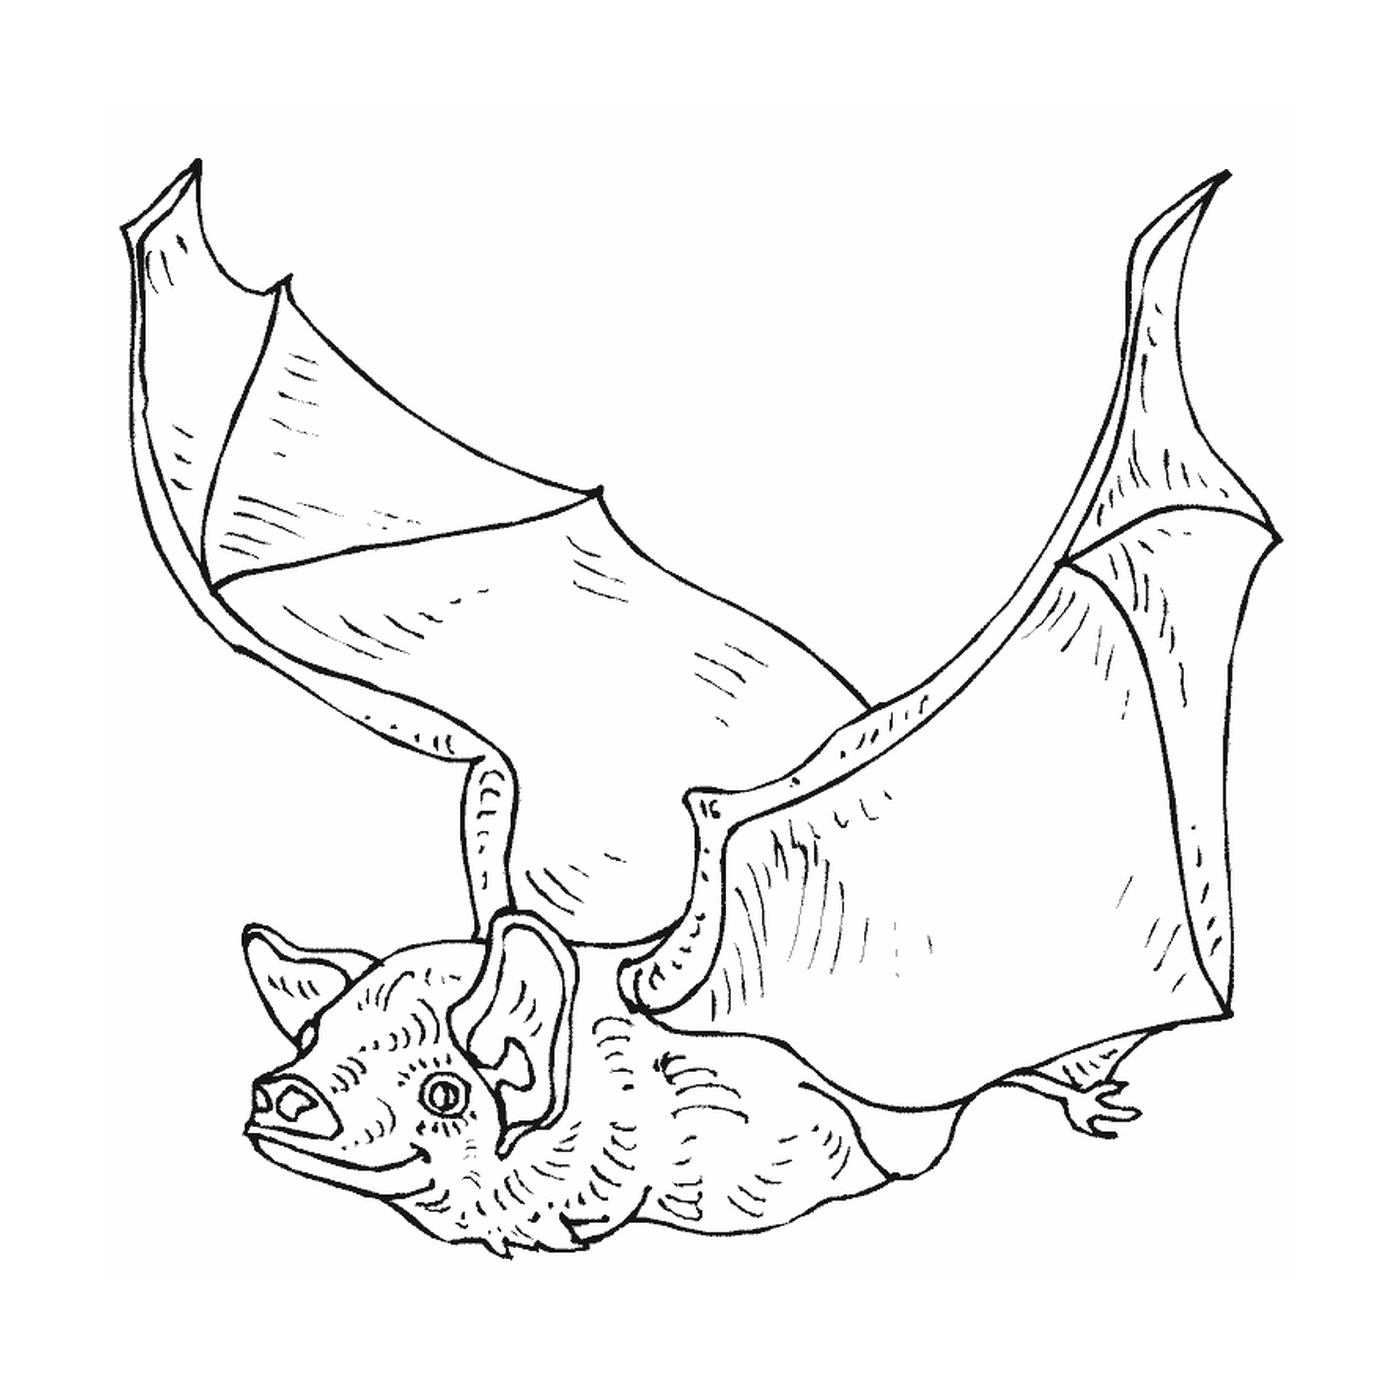  murciélago en vuelo con alas desplegadas 